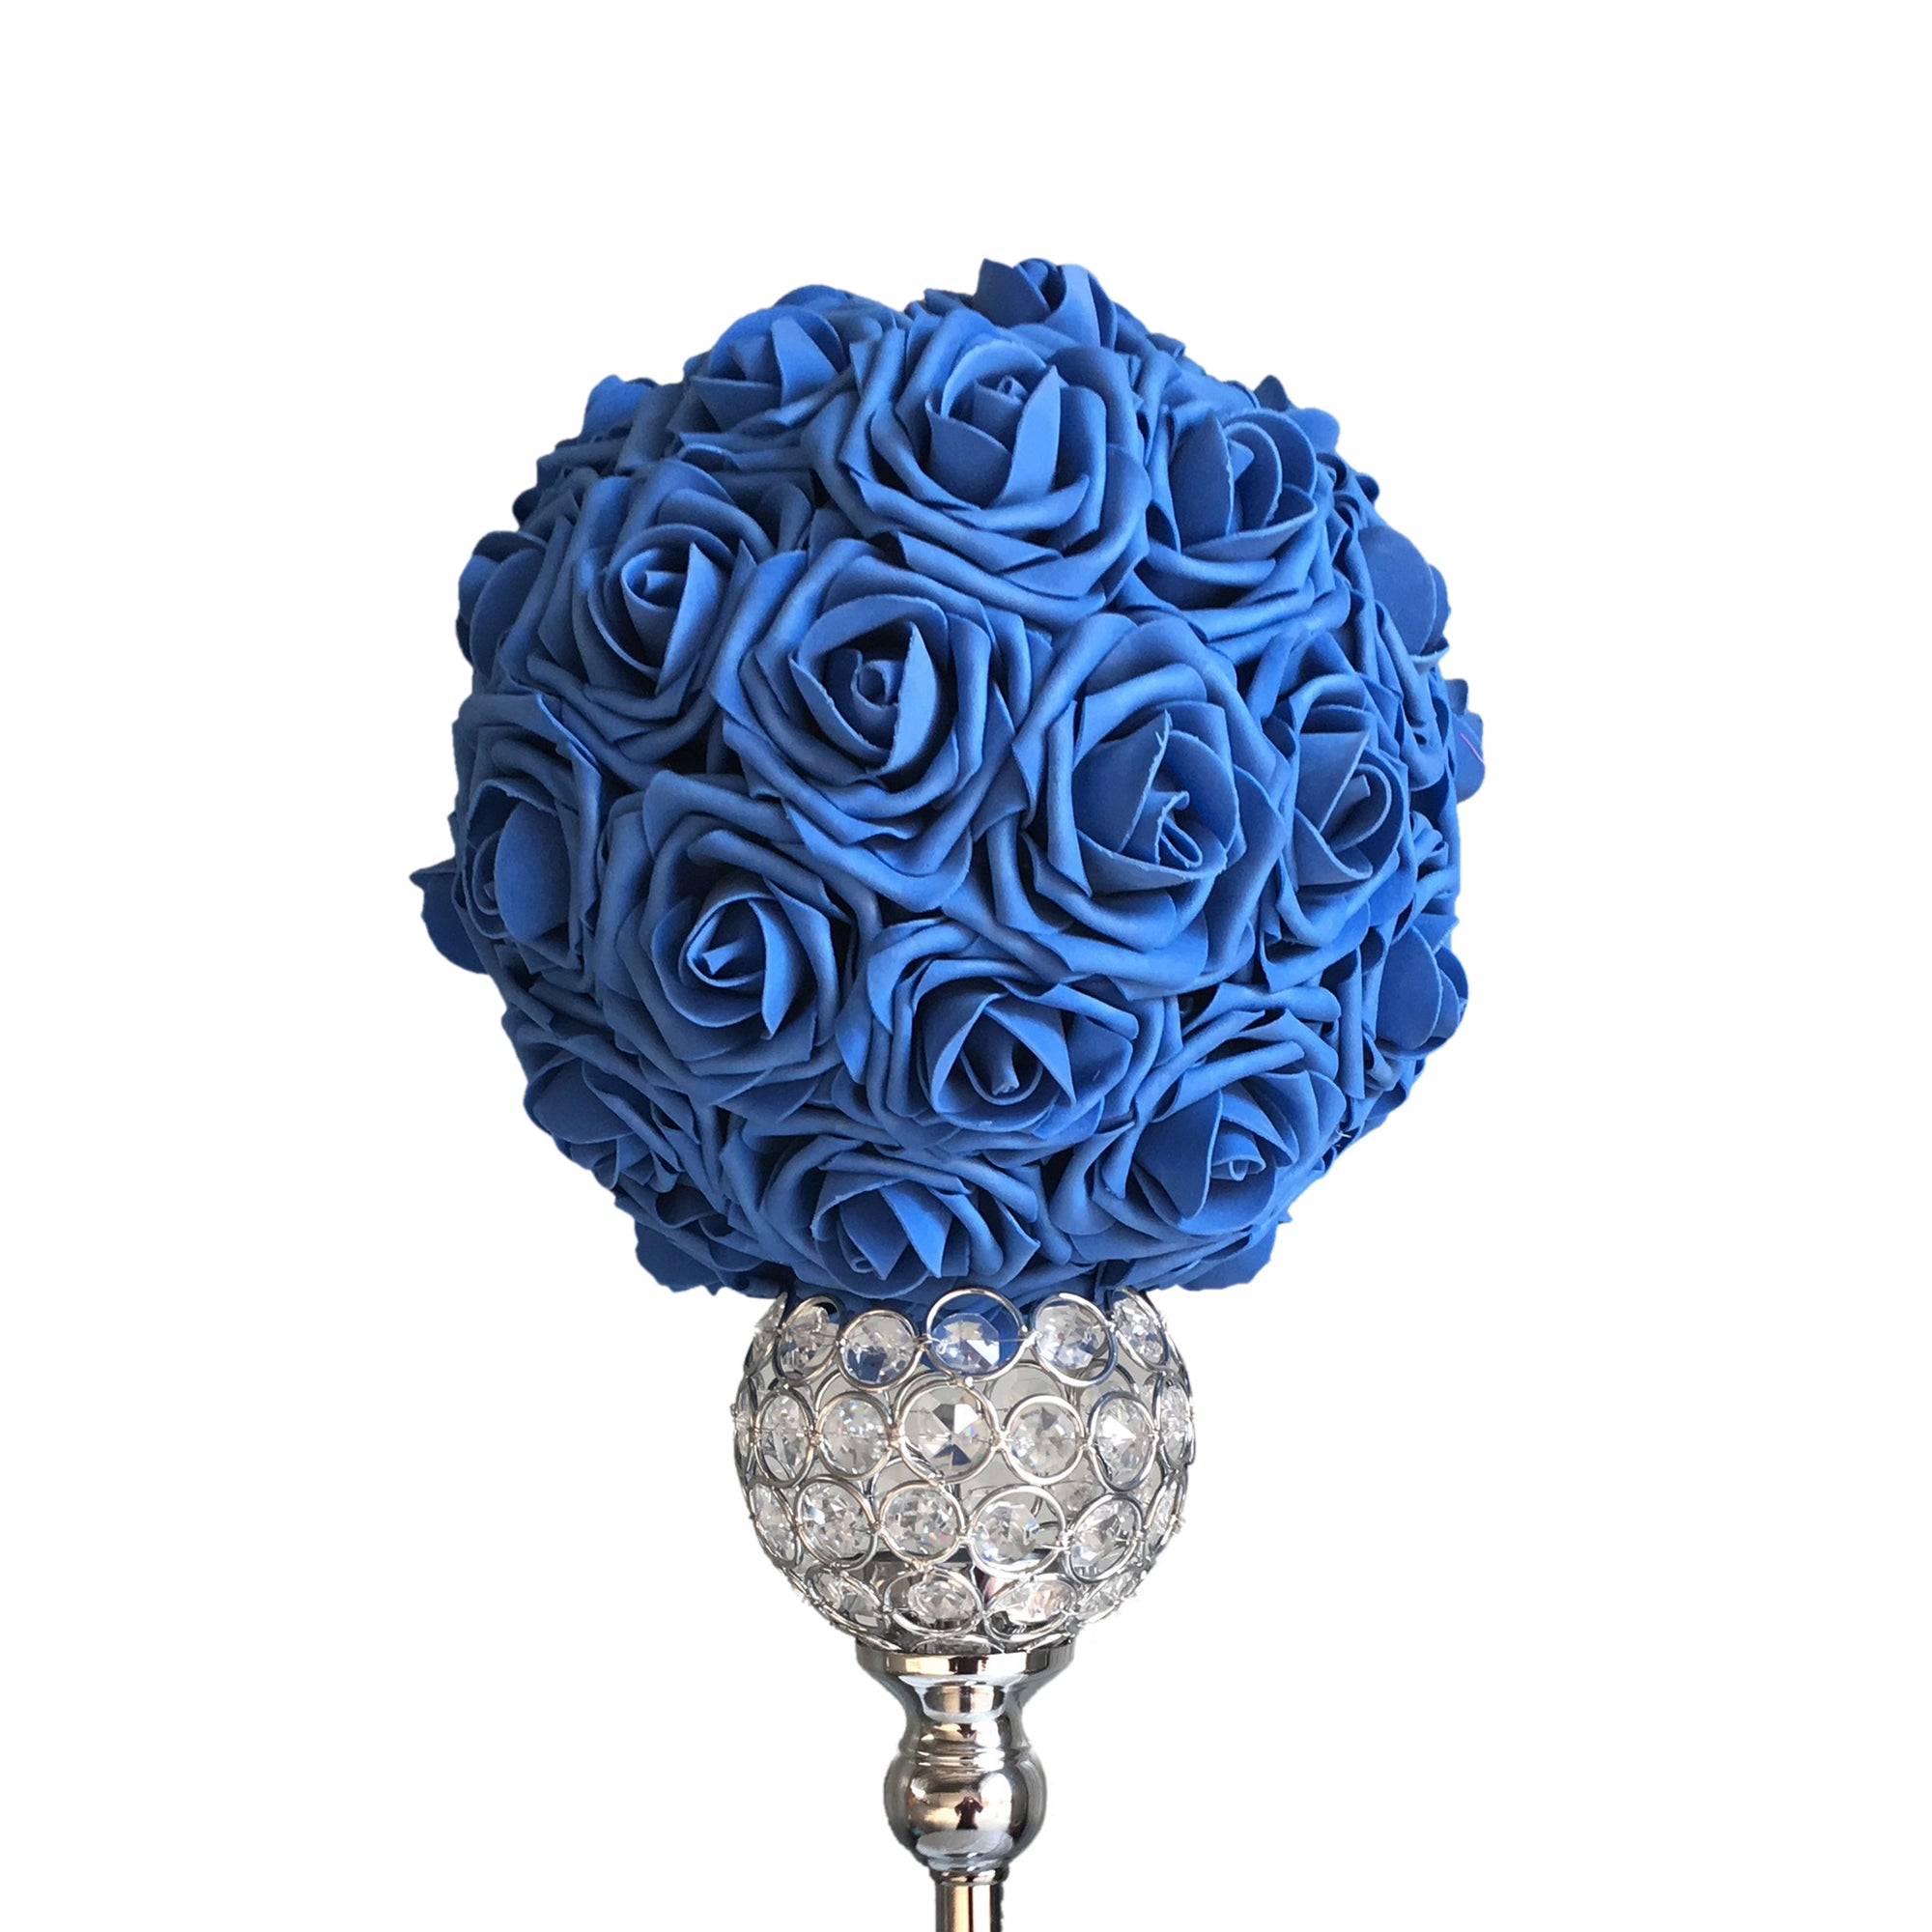 blue flower ball